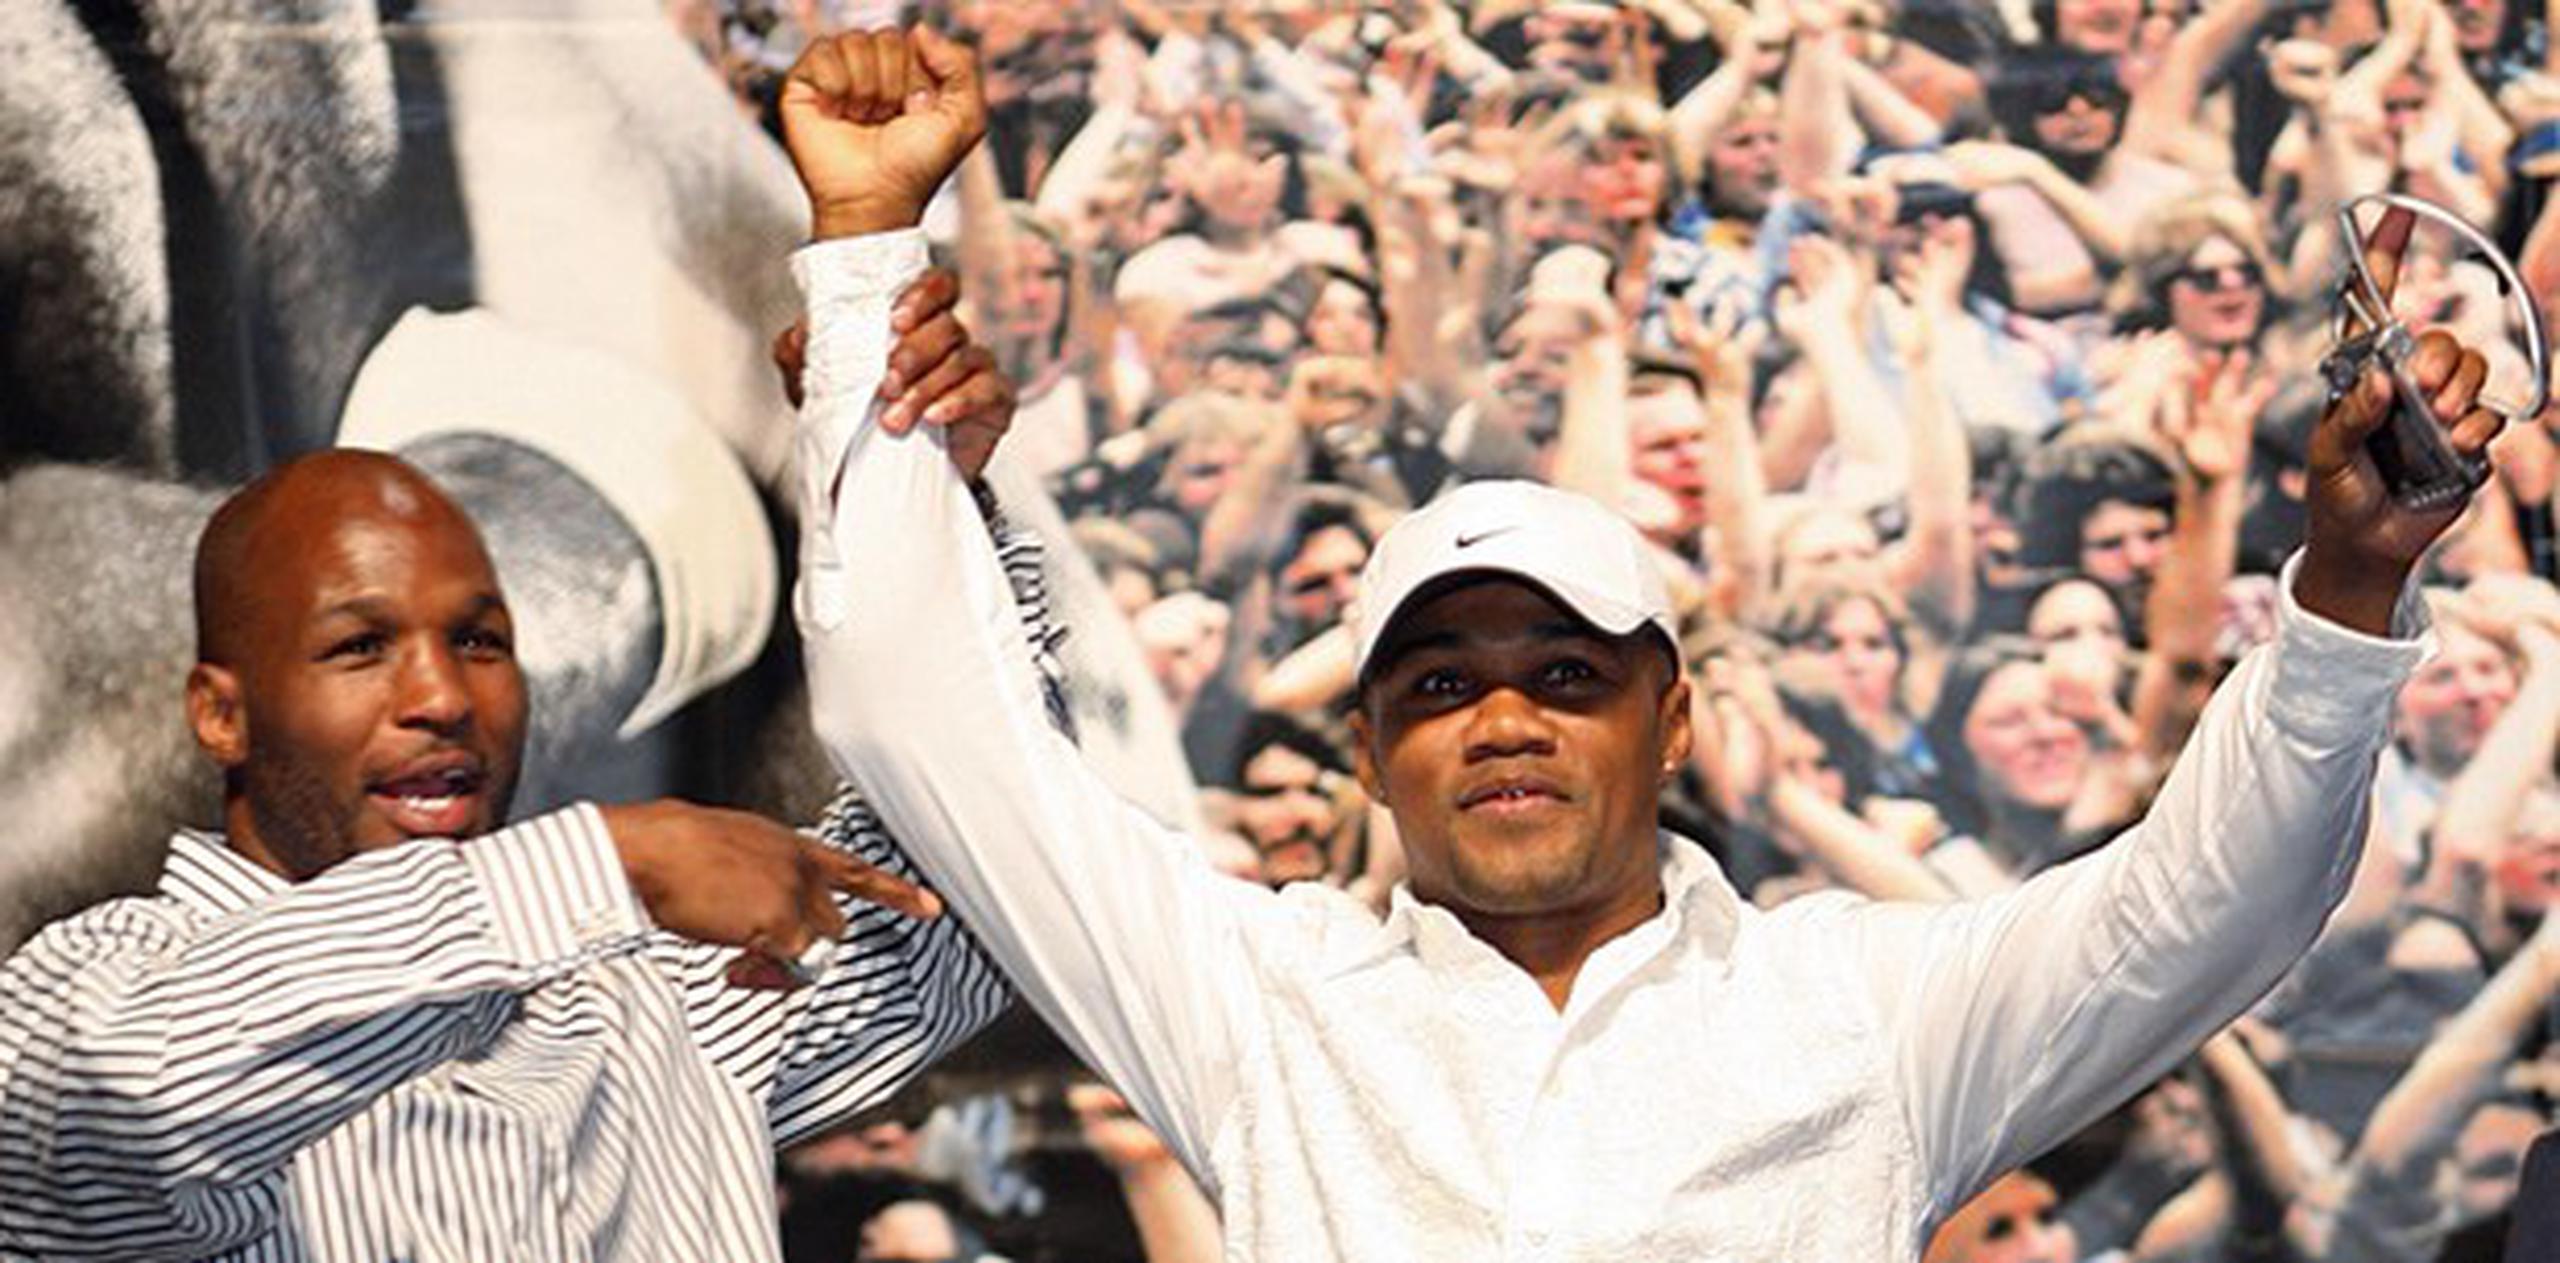 El púgil filadelfiano le levantó el brazo a Tito Trinidad cuando compartieron en Las Vegas en el 2007. (Archivo)